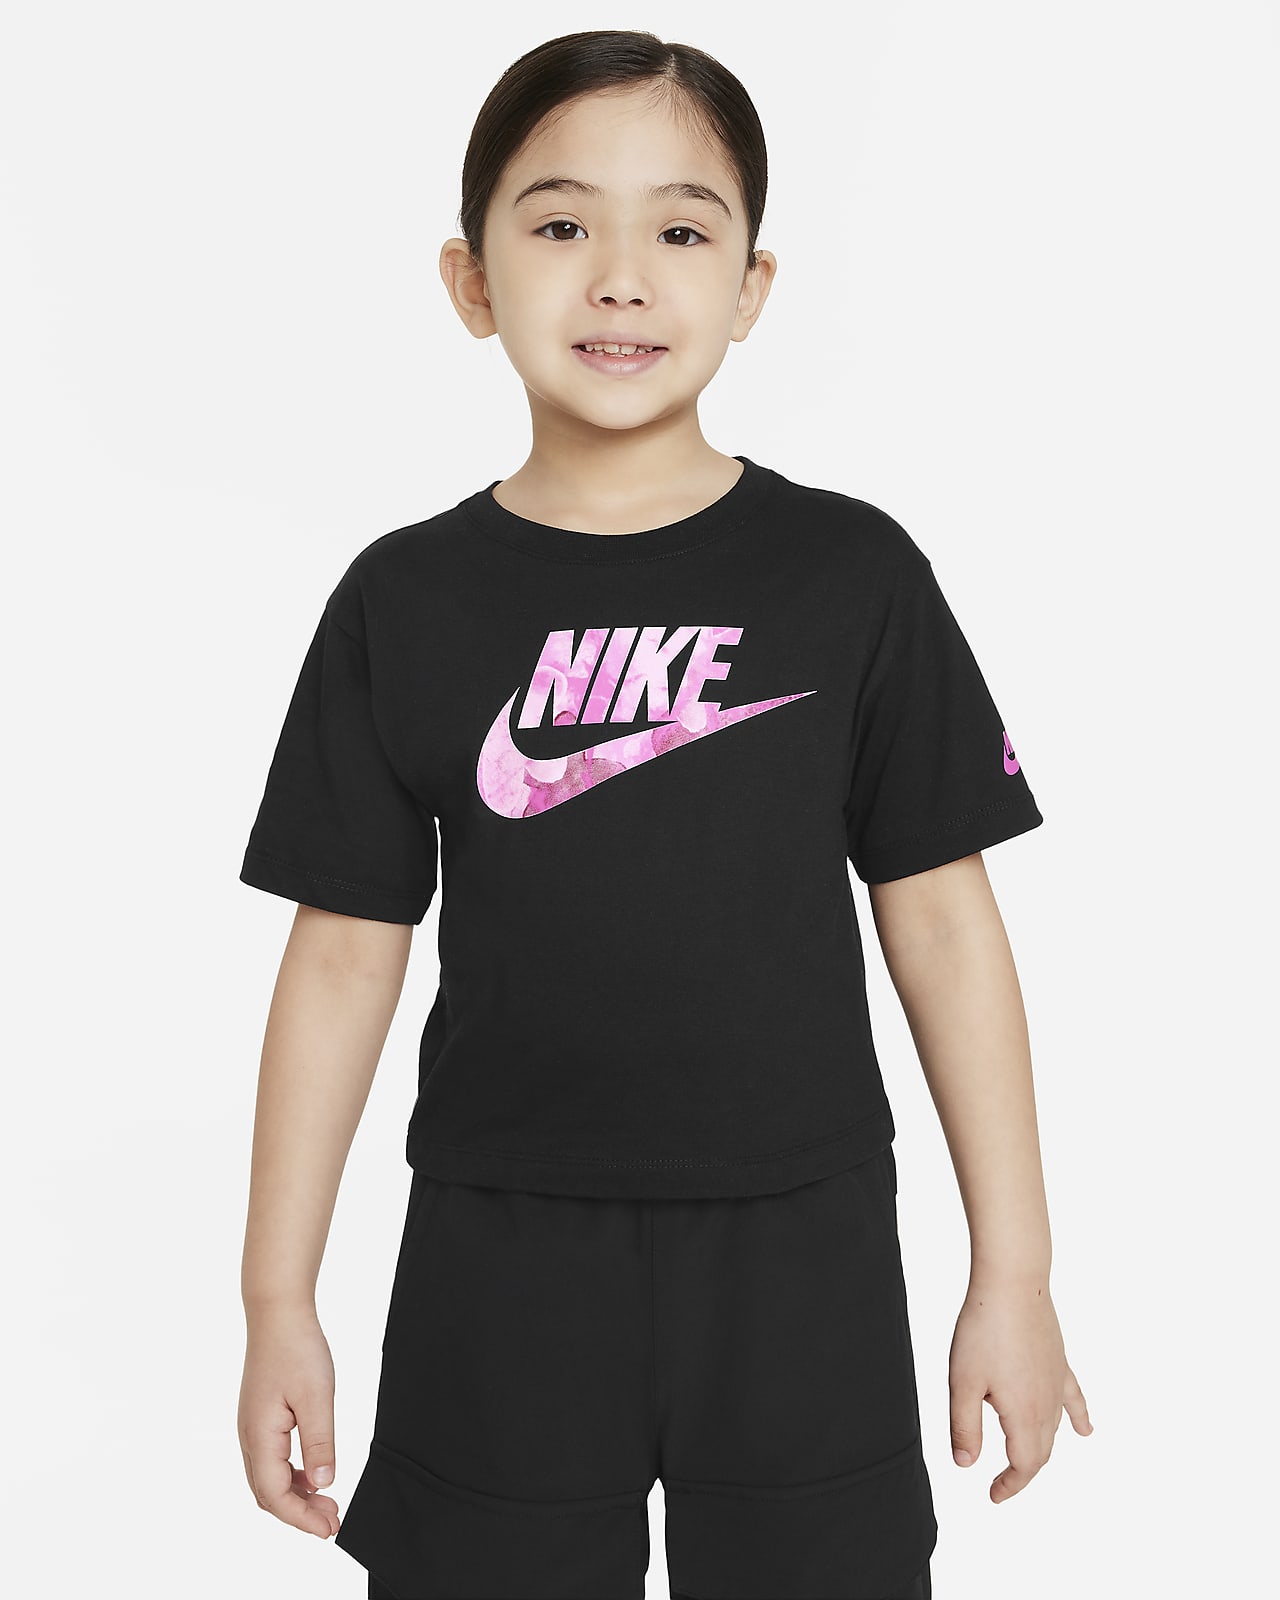 T-shirt dla małych dzieci Nike Sci-Dye Boxy